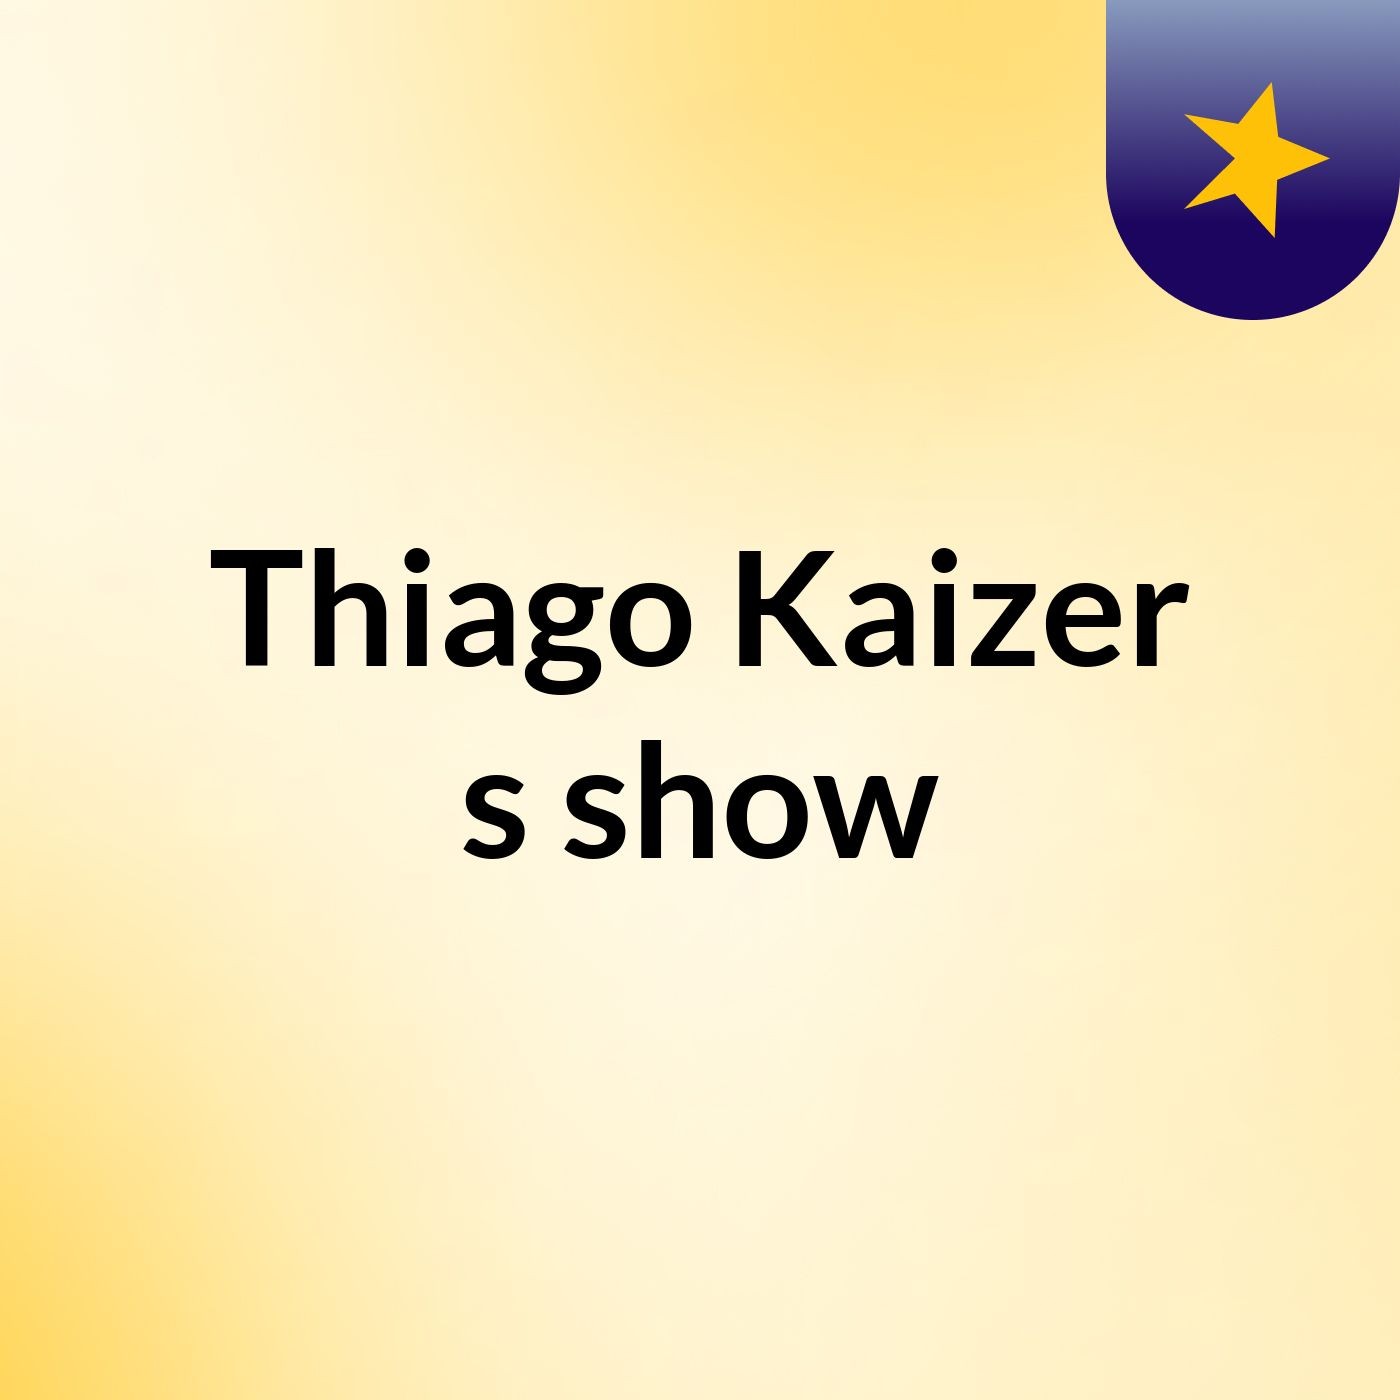 Thiago Kaizer's show